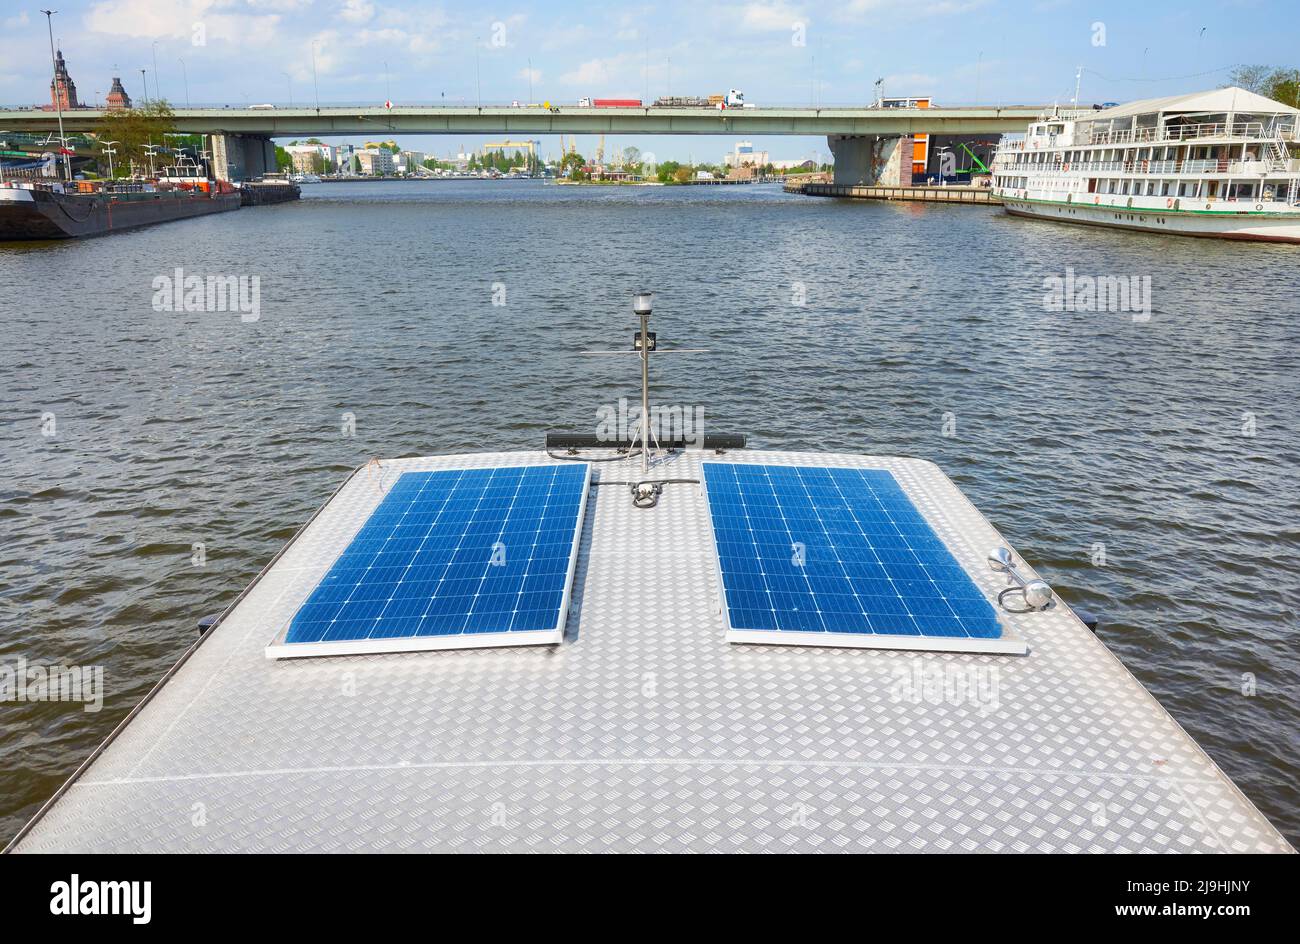 Panneaux photovoltaïques sur le toit d'un bateau, concept de voyage écologique. Banque D'Images